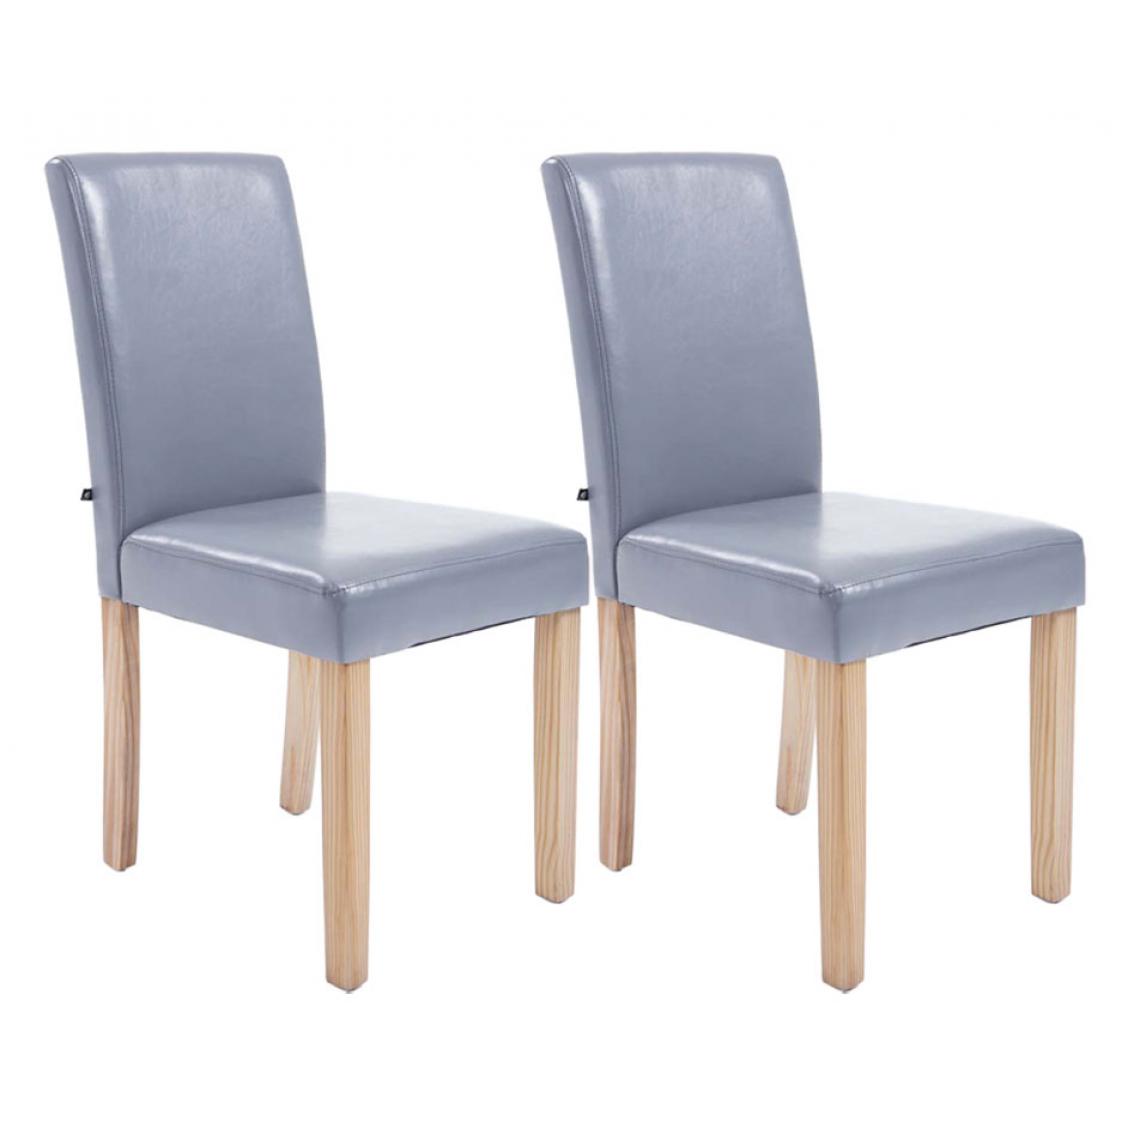 Icaverne - Moderne Lot de 2 chaises de salle à manger collection Rabat natura couleur gris - Chaises